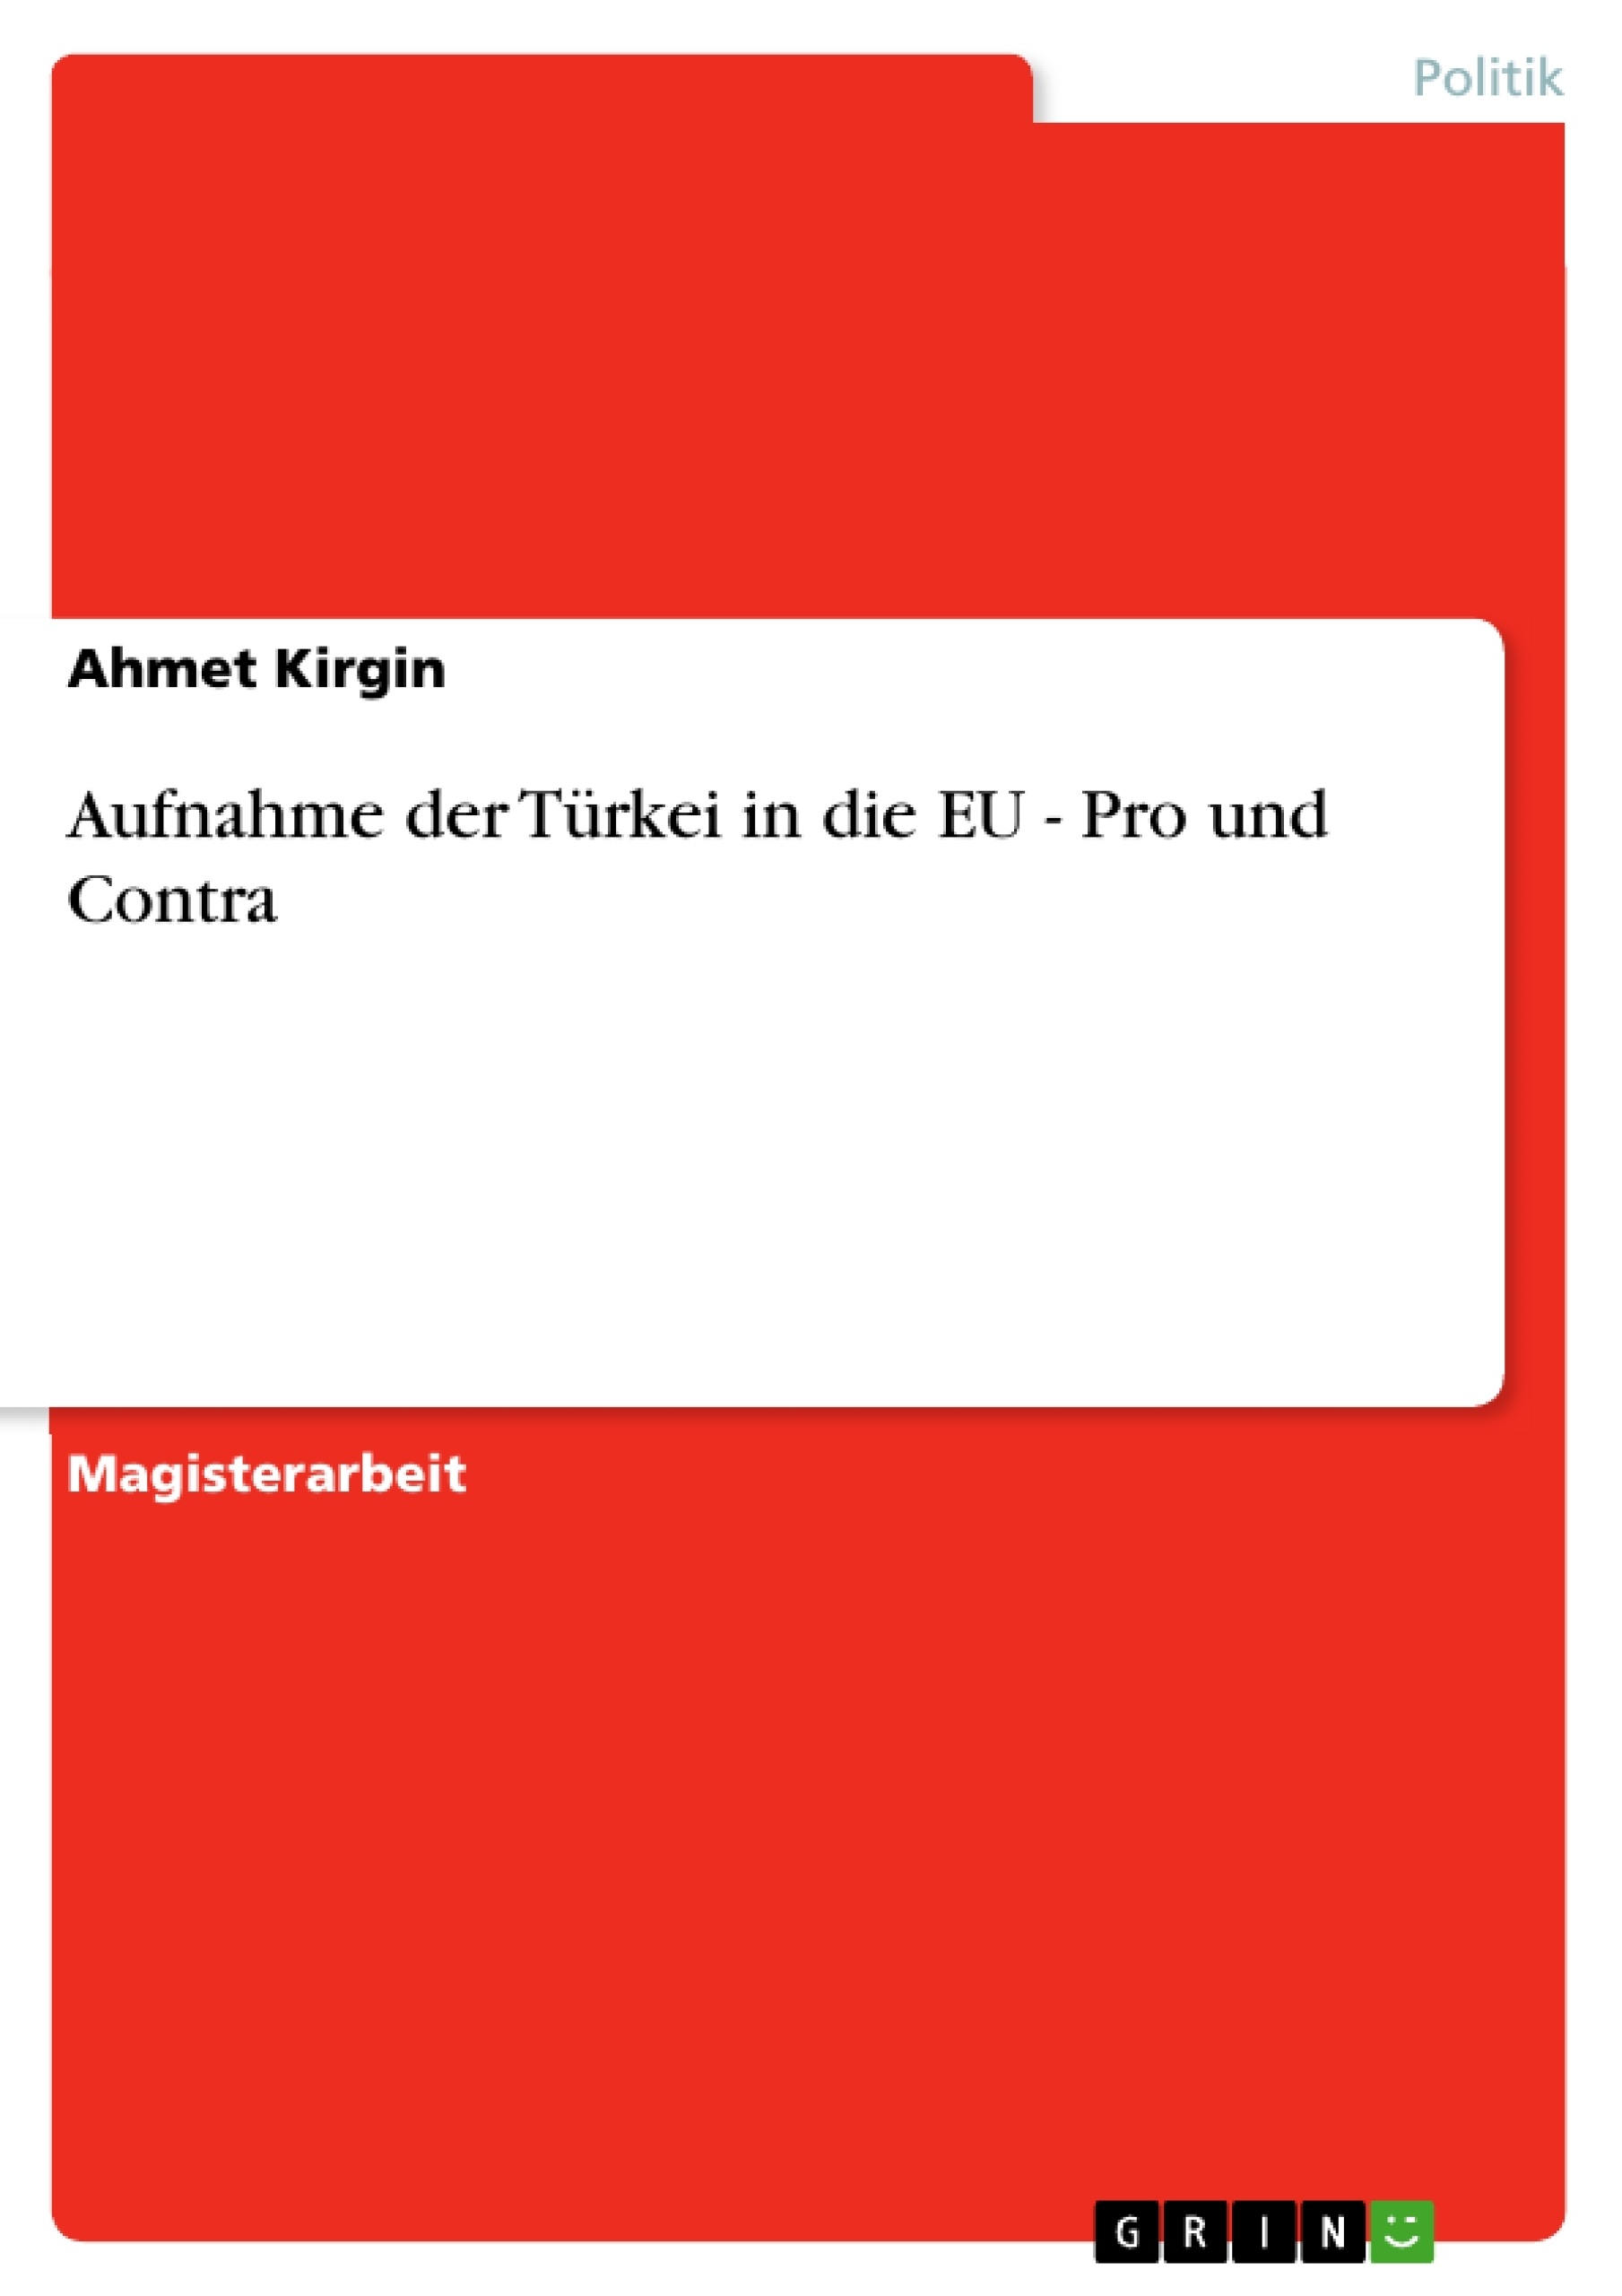 Titel: Aufnahme der Türkei in die EU - Pro und Contra